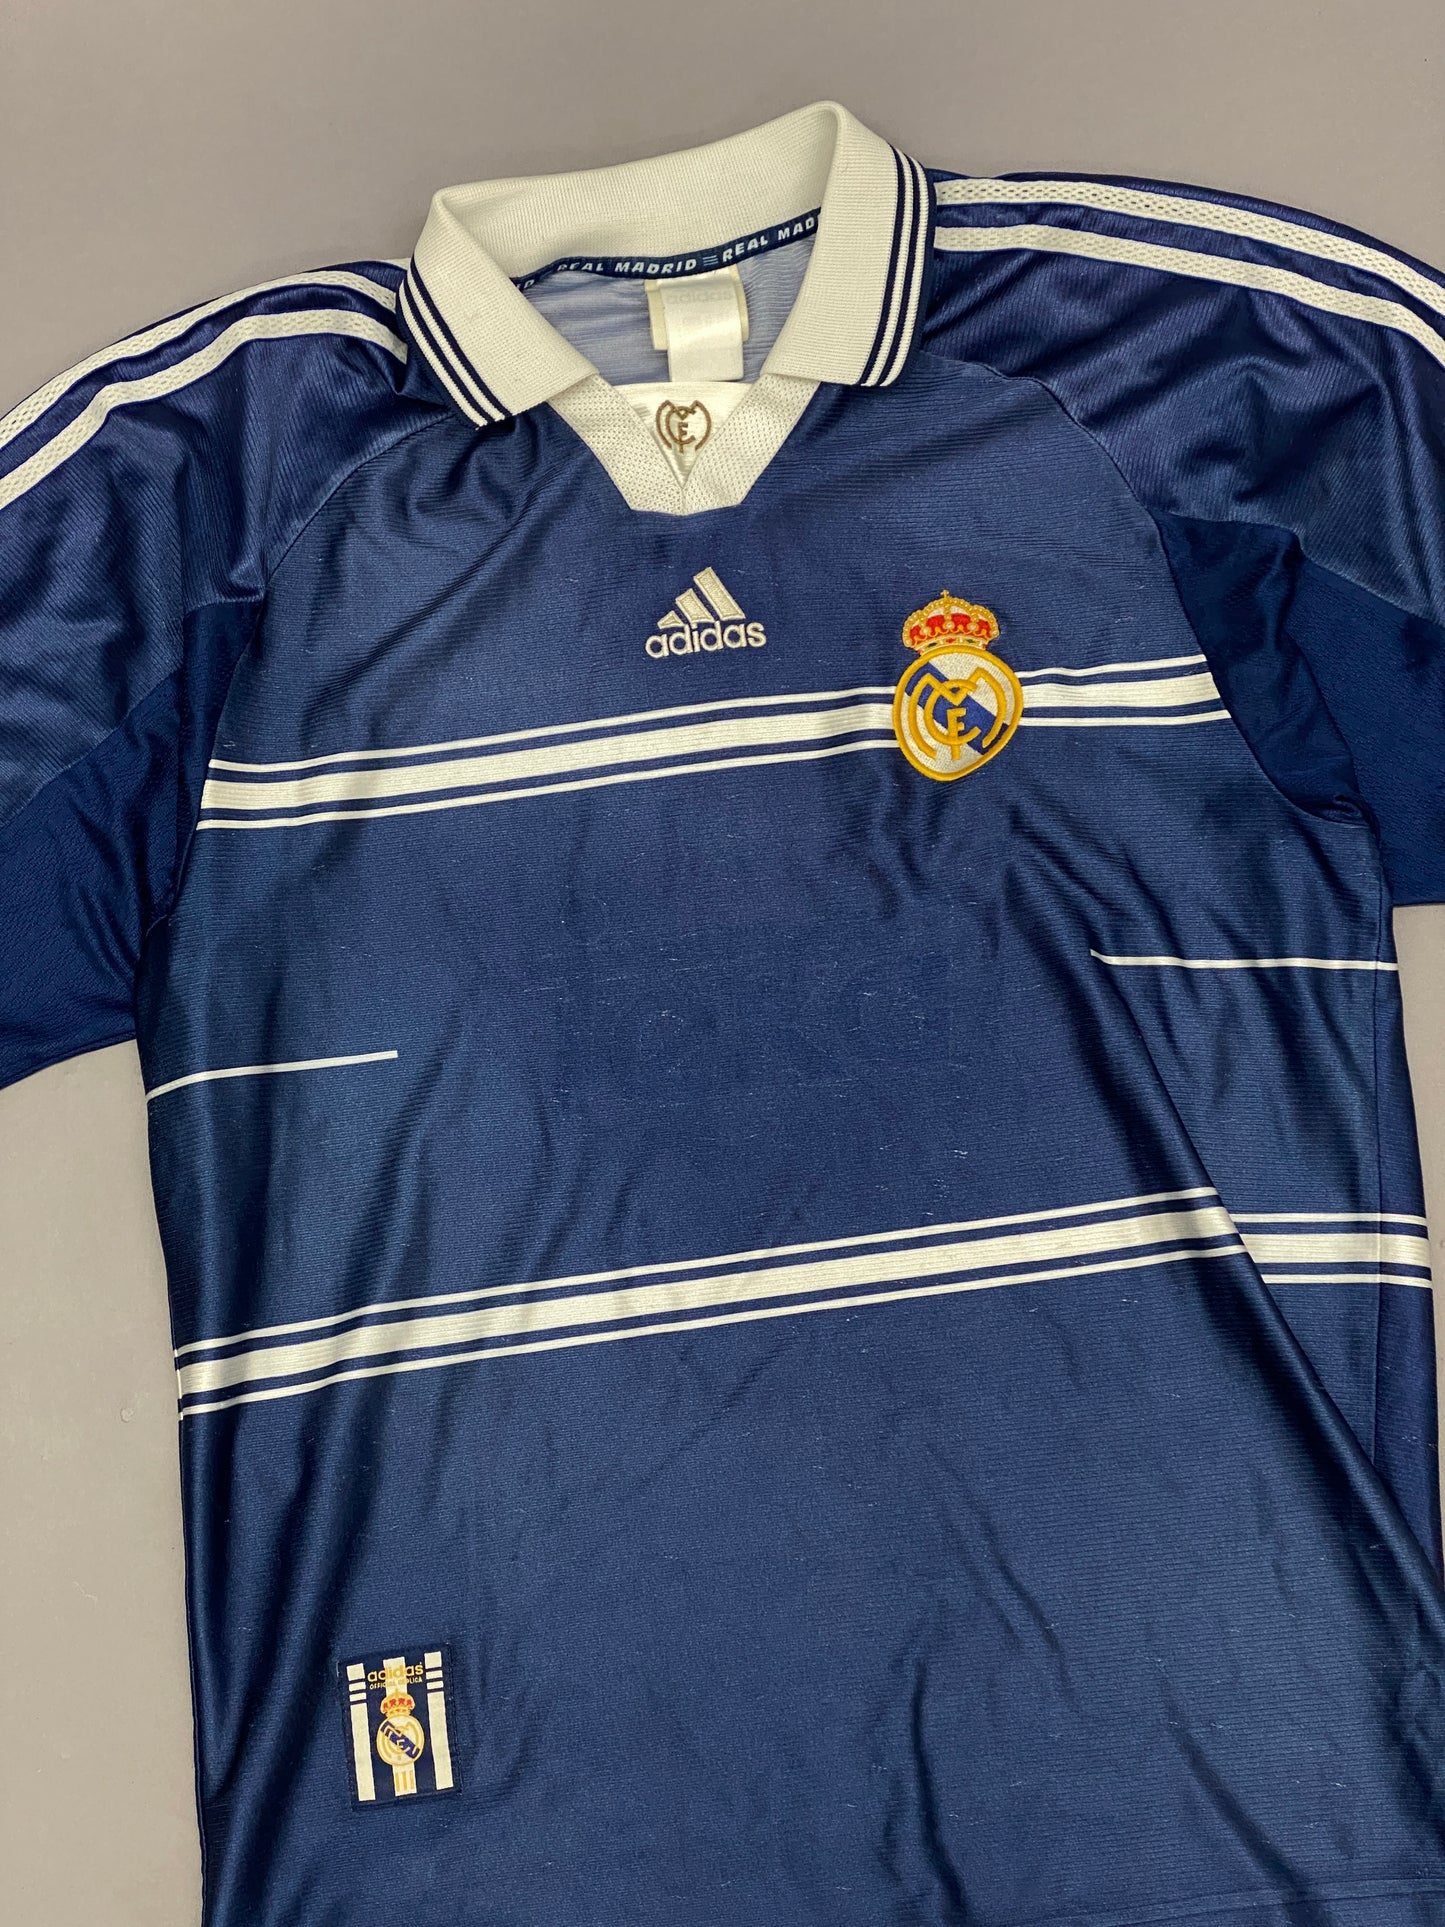 Jersey Adidas Real Madrid 1999 Vintage